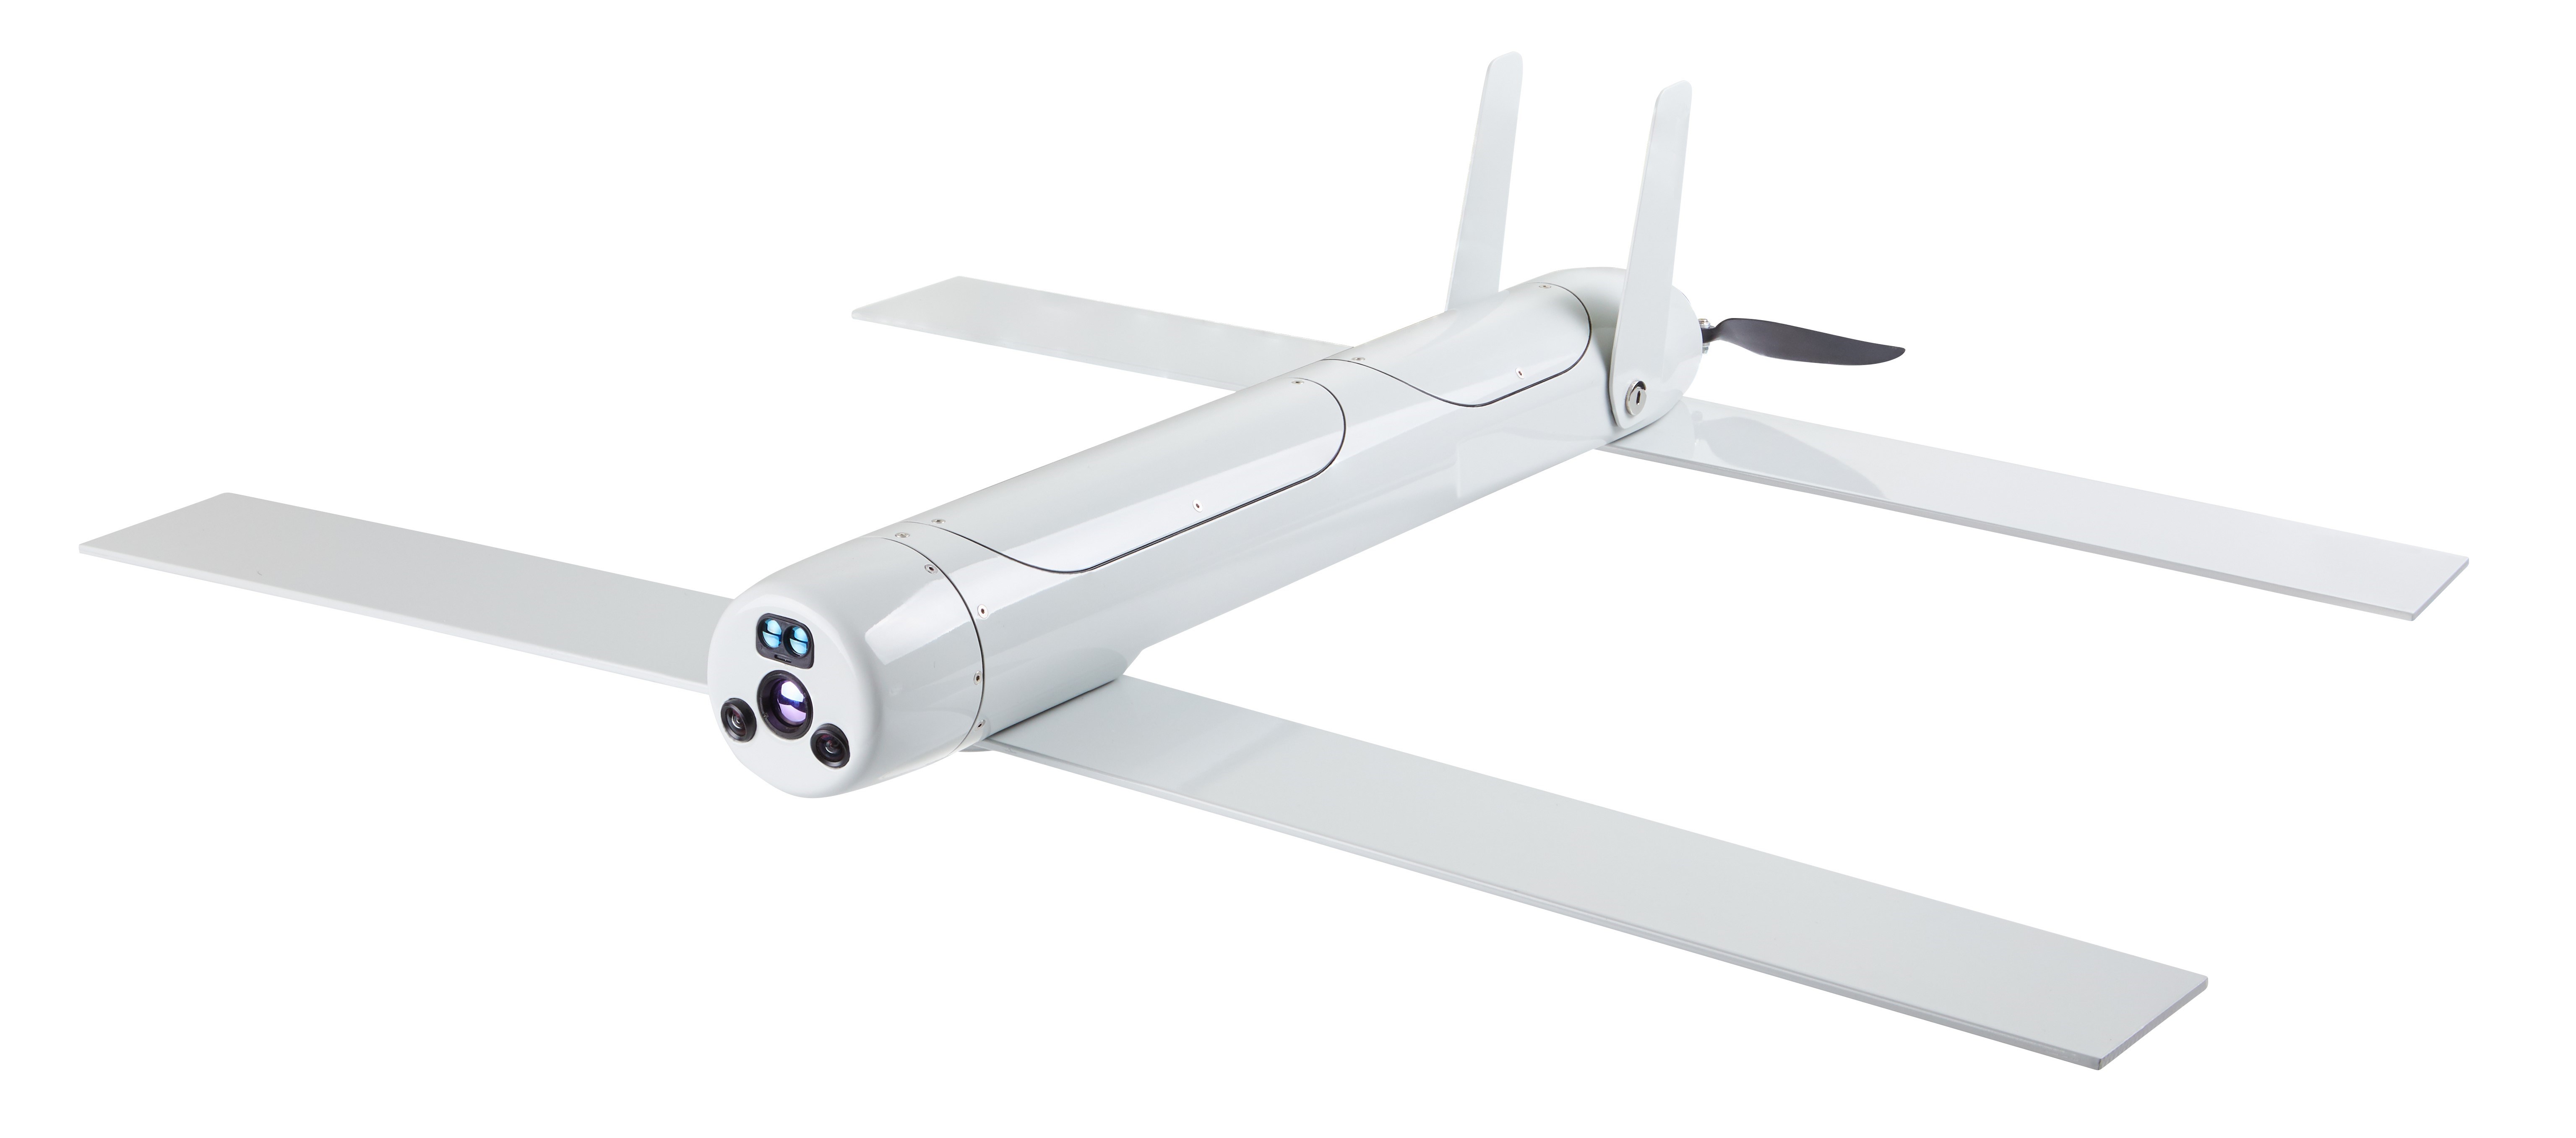 Türkiye'nin yeni kamikaze drone'u Alpagu, göreve hazırlanıyor